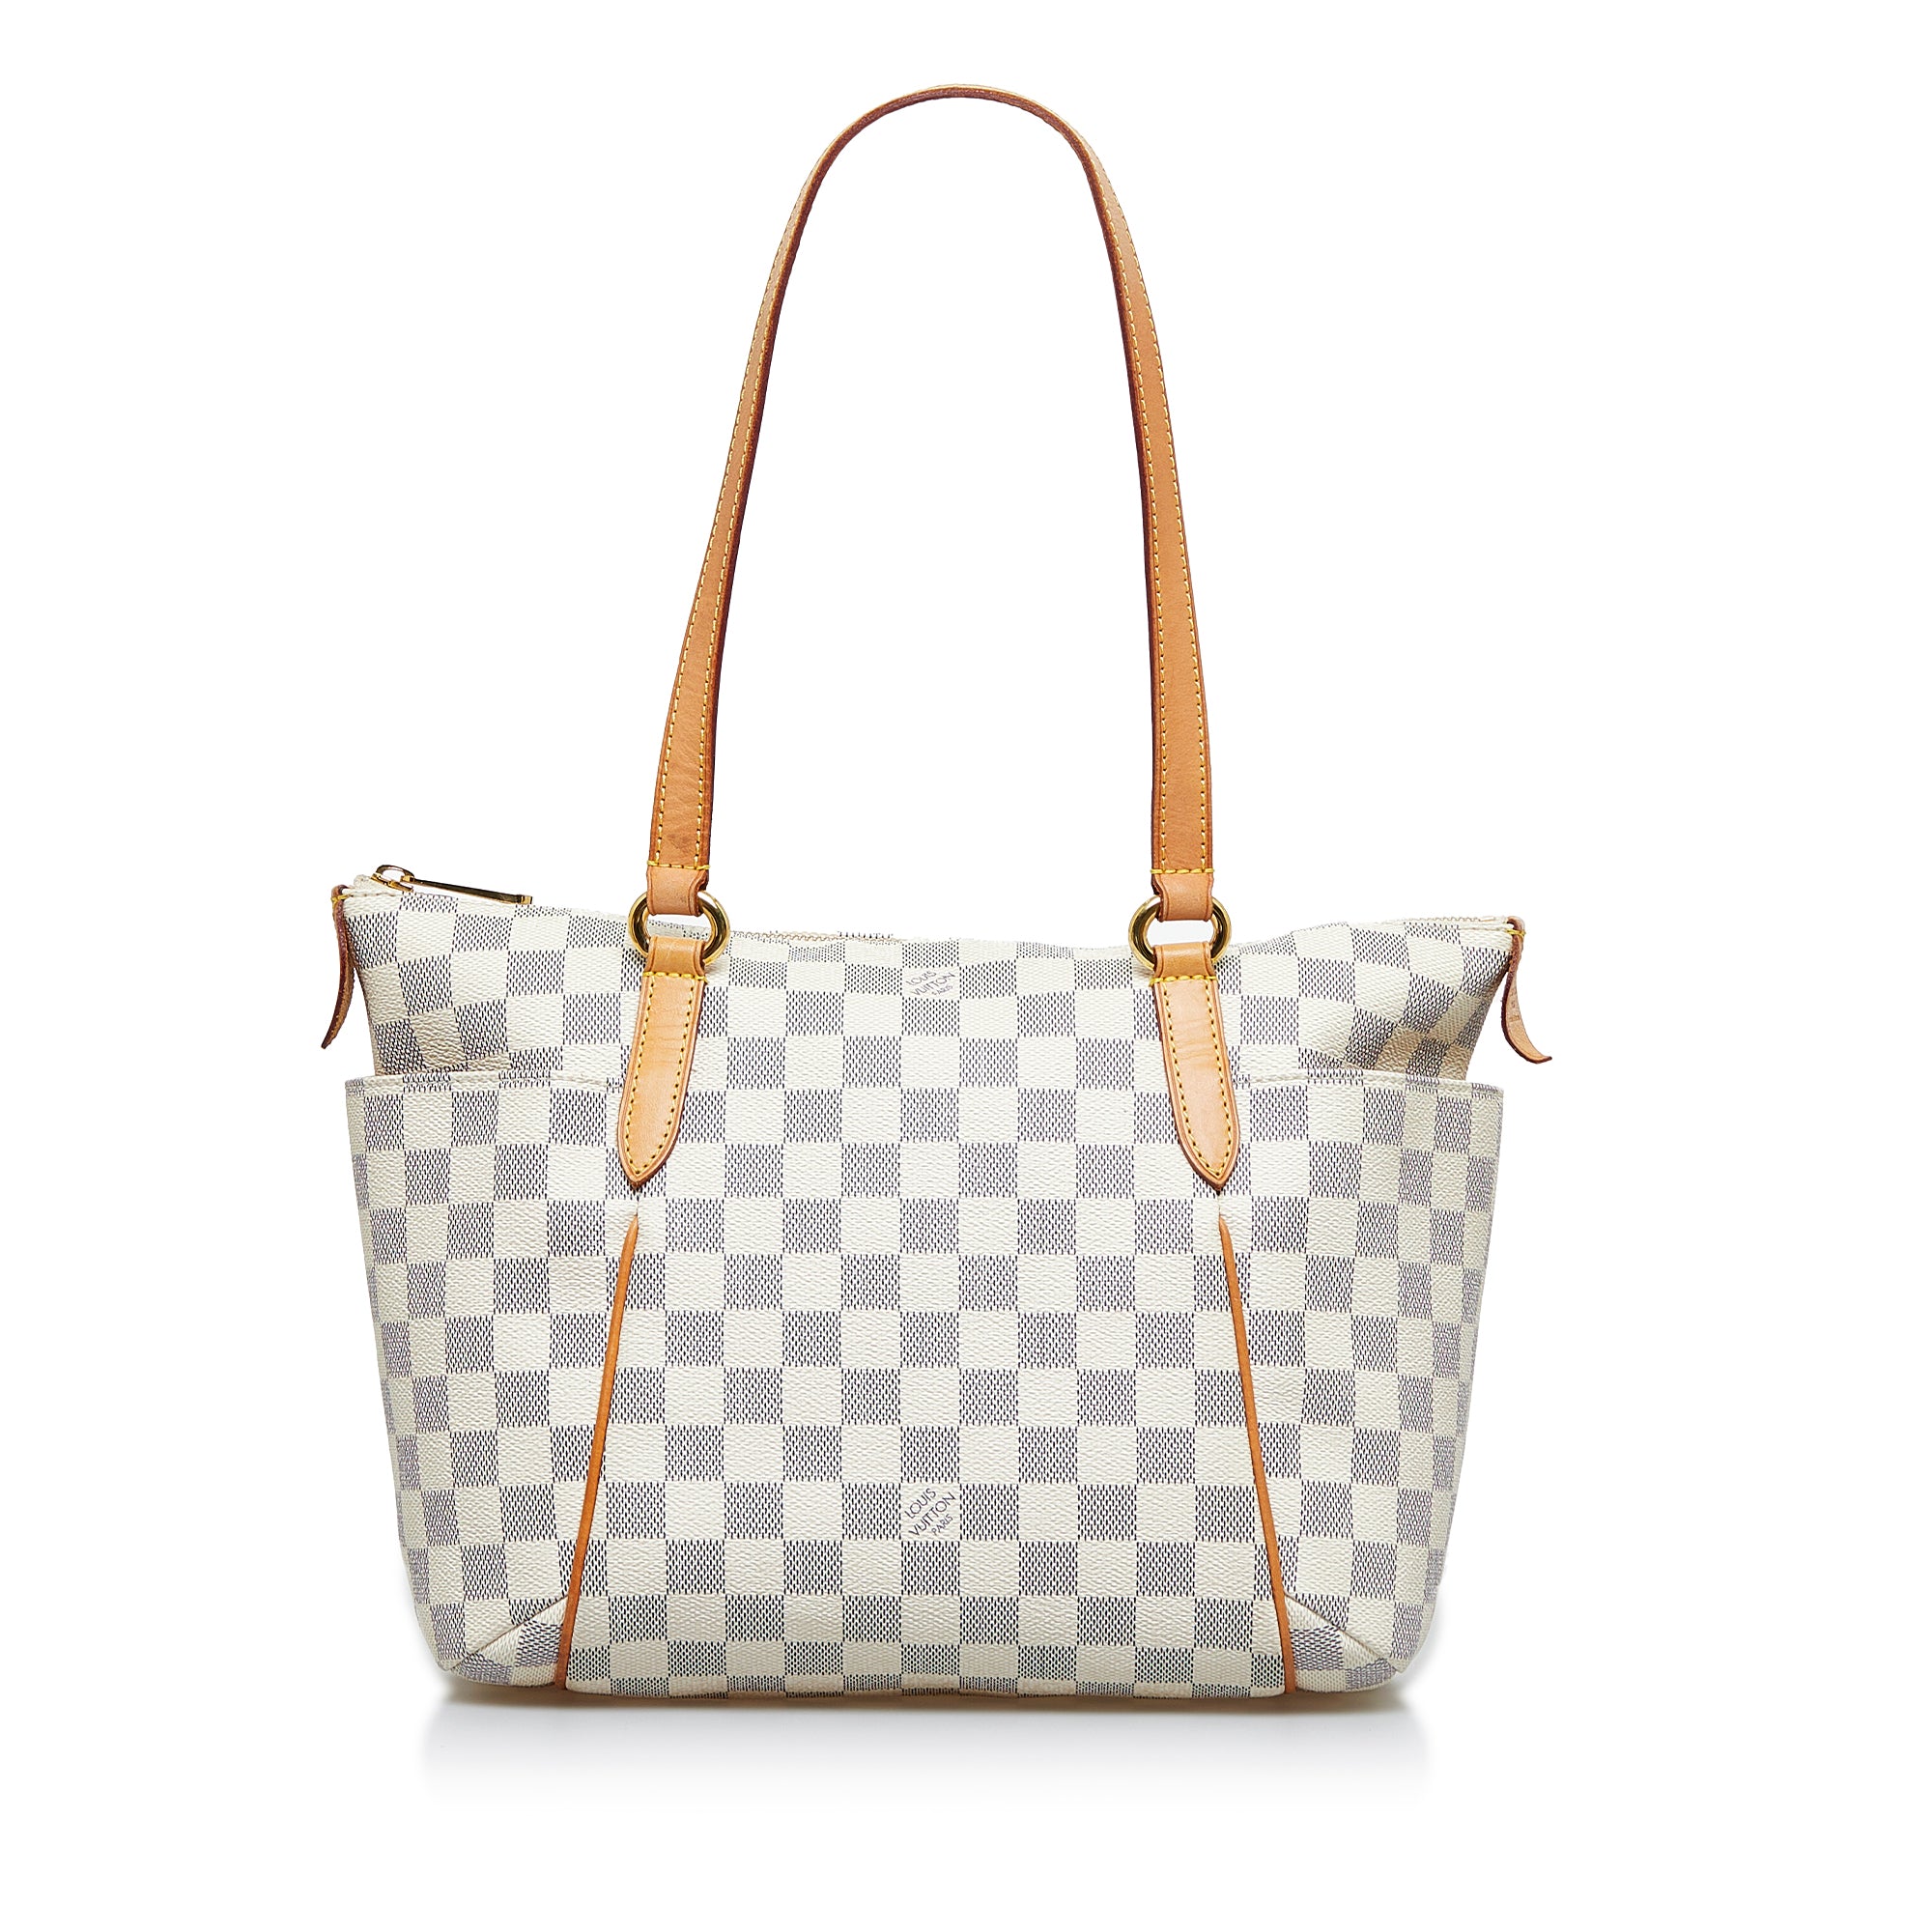 Best Deals for Louis Vuitton Damier Azur Shoulder Bag